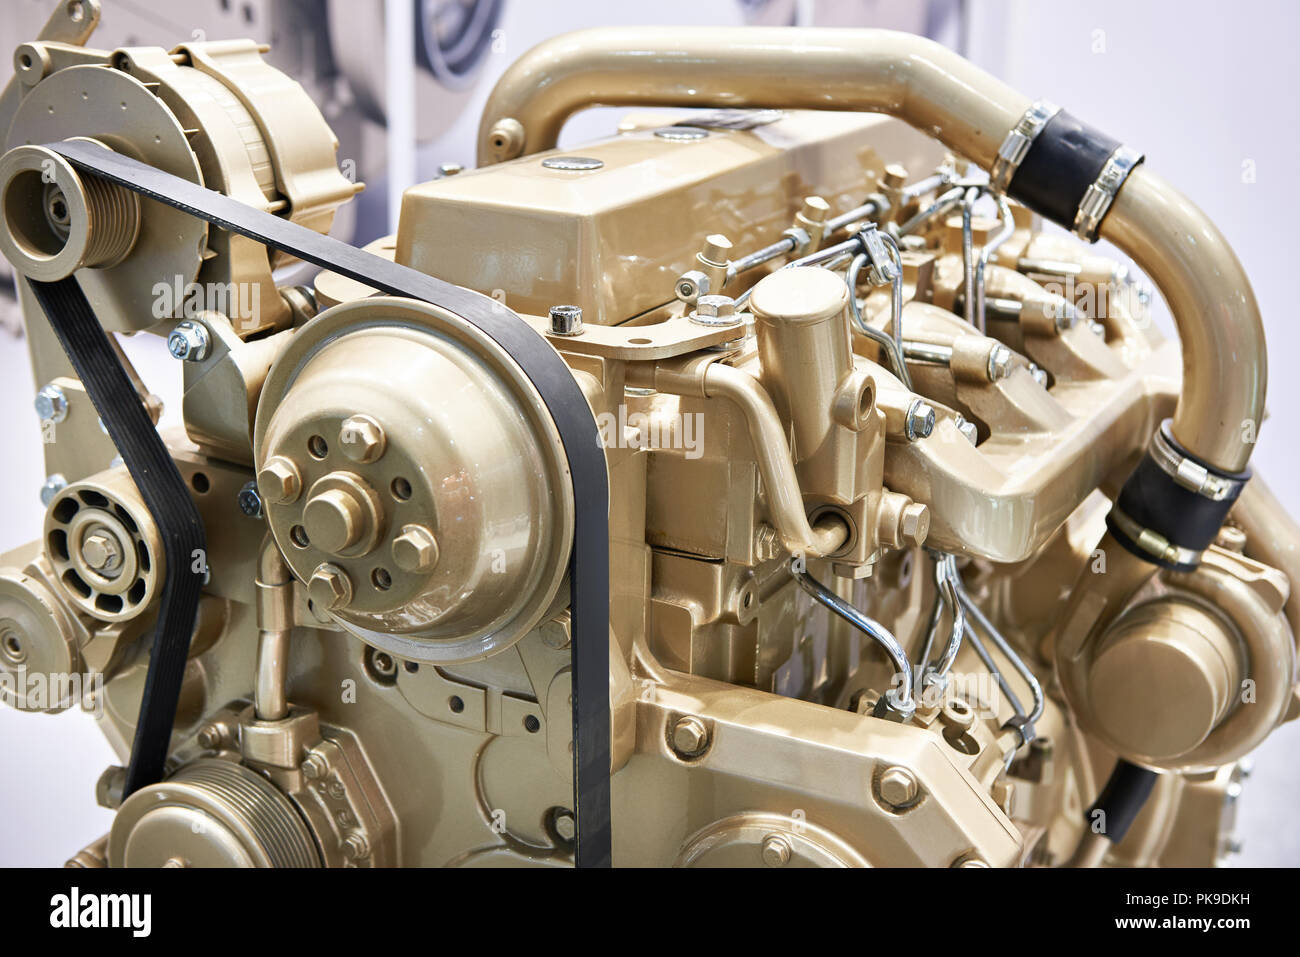 Turbo Diesel Motor auf Halterung Stockfotografie - Alamy